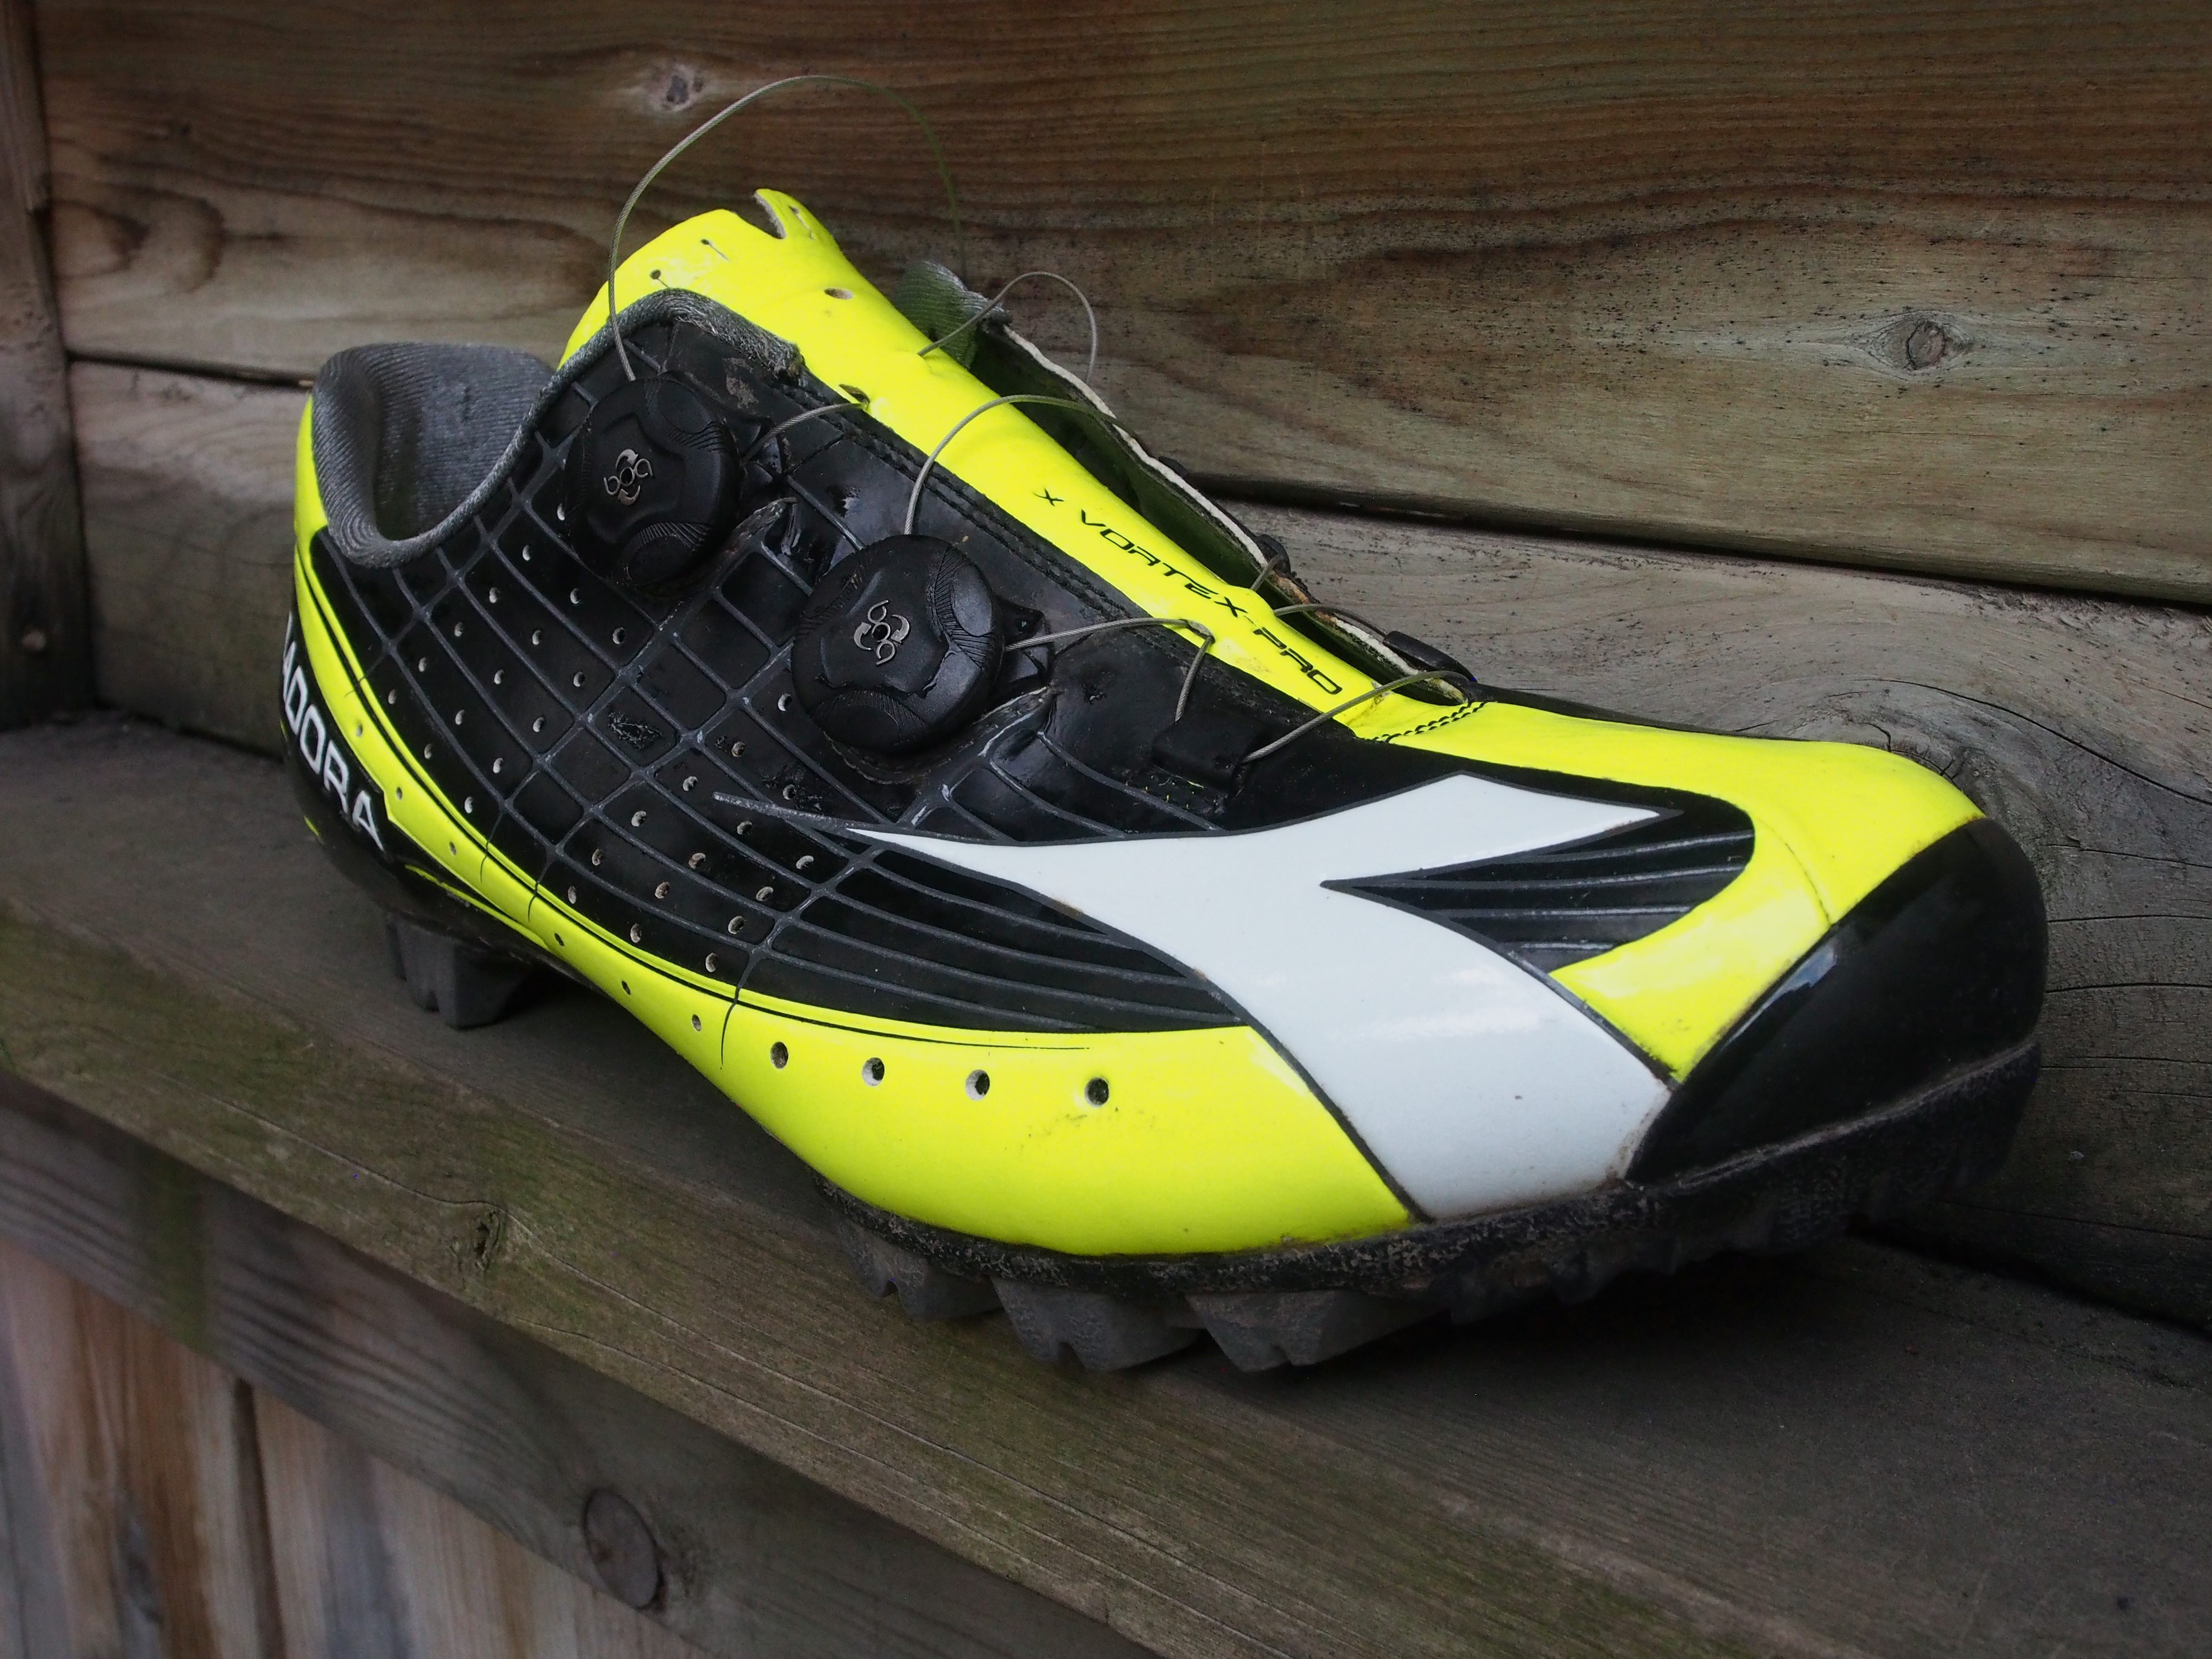 Diadora X Vortex Pro mountain bike shoe review - Canadian Cycling Magazine